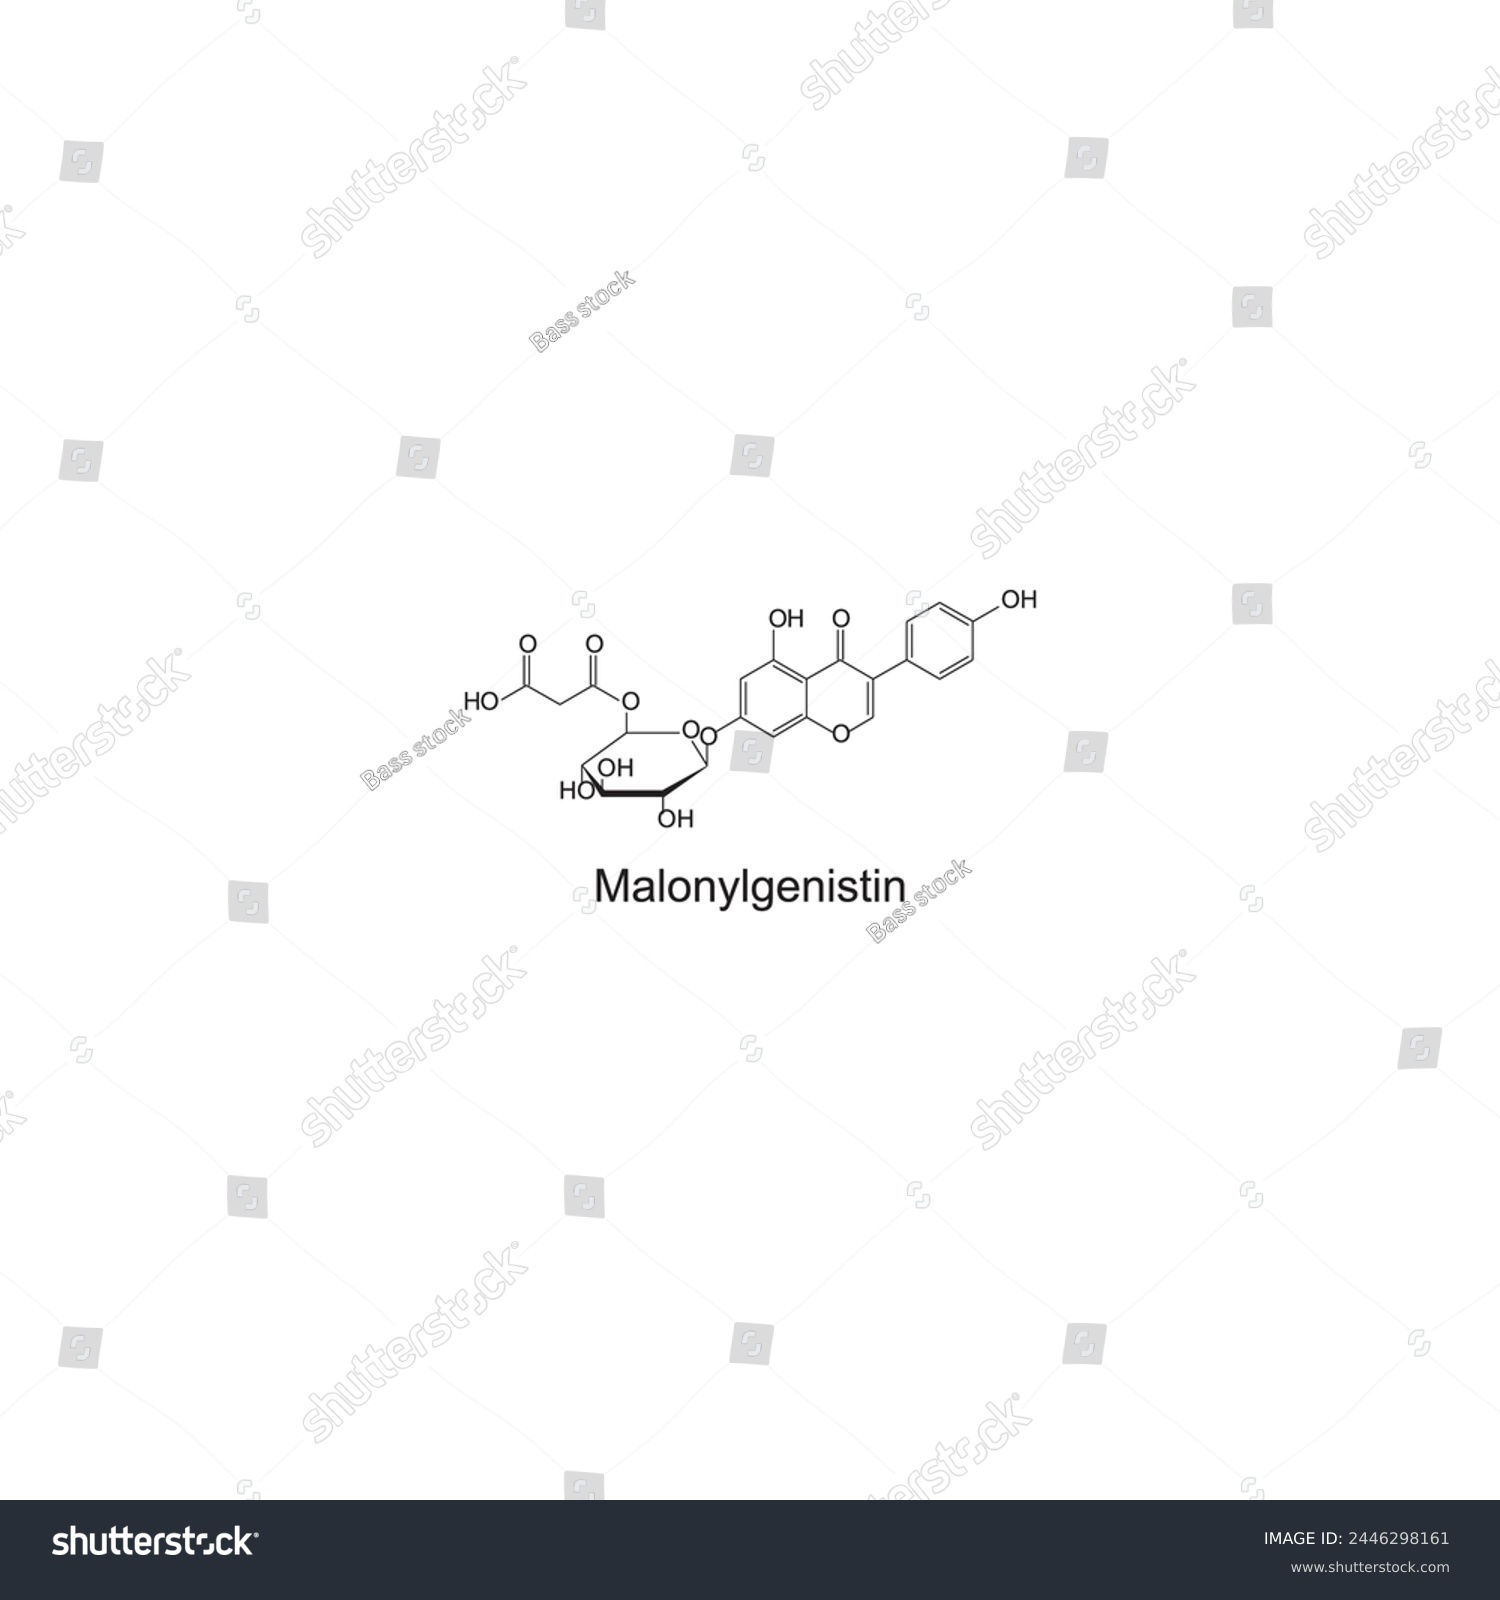 SVG of Malonyldaidzin skeletal structure diagram.Isoflavanone compound molecule scientific illustration on white background. svg